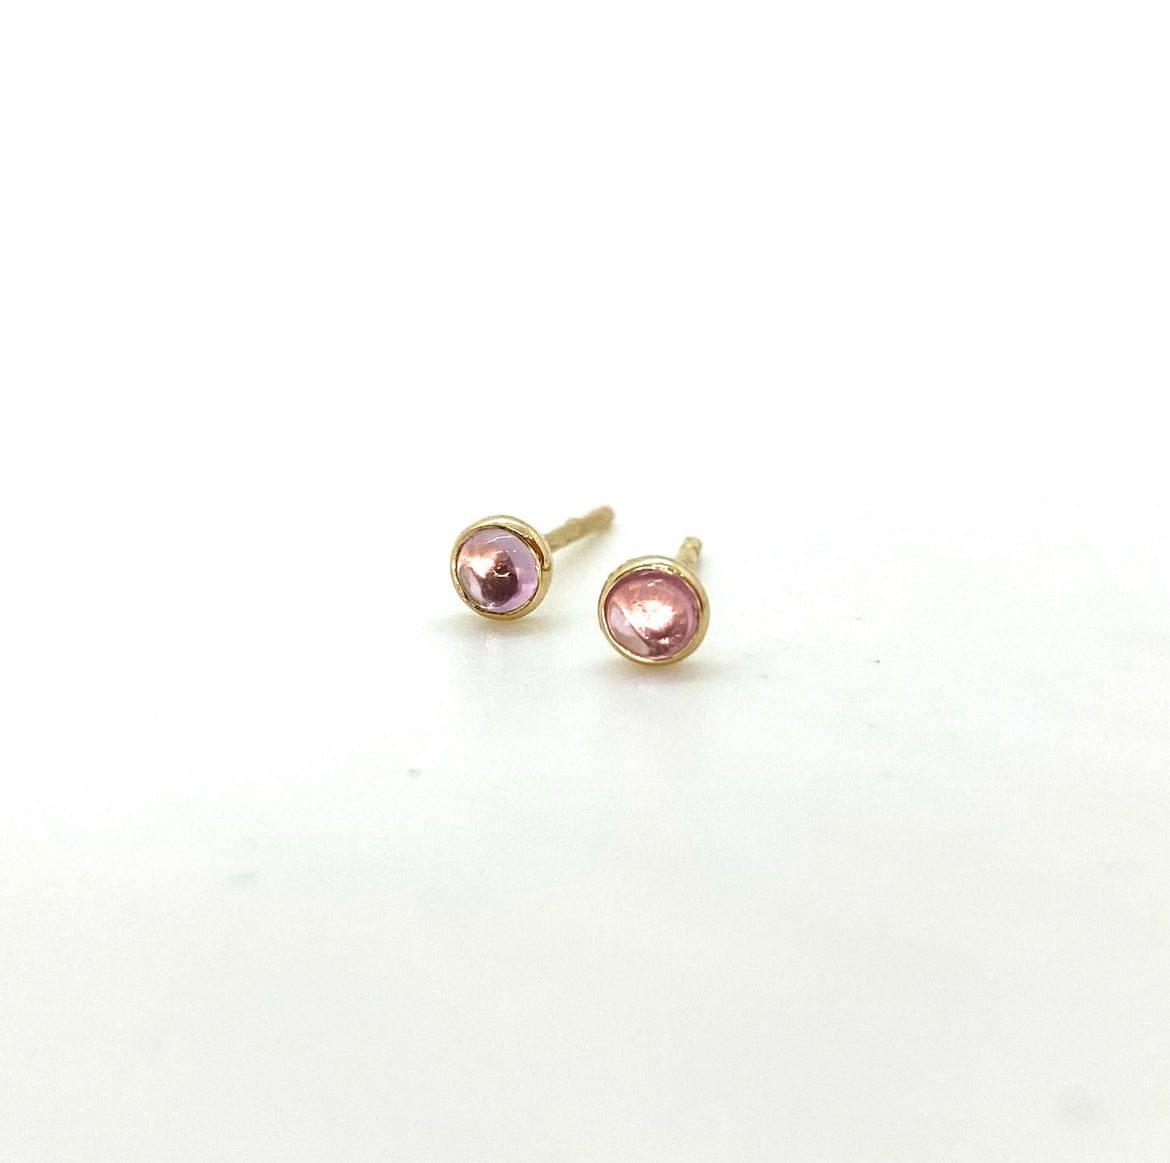 Sapphire 'Jelly Bean' Stud Earrings -14k Gold